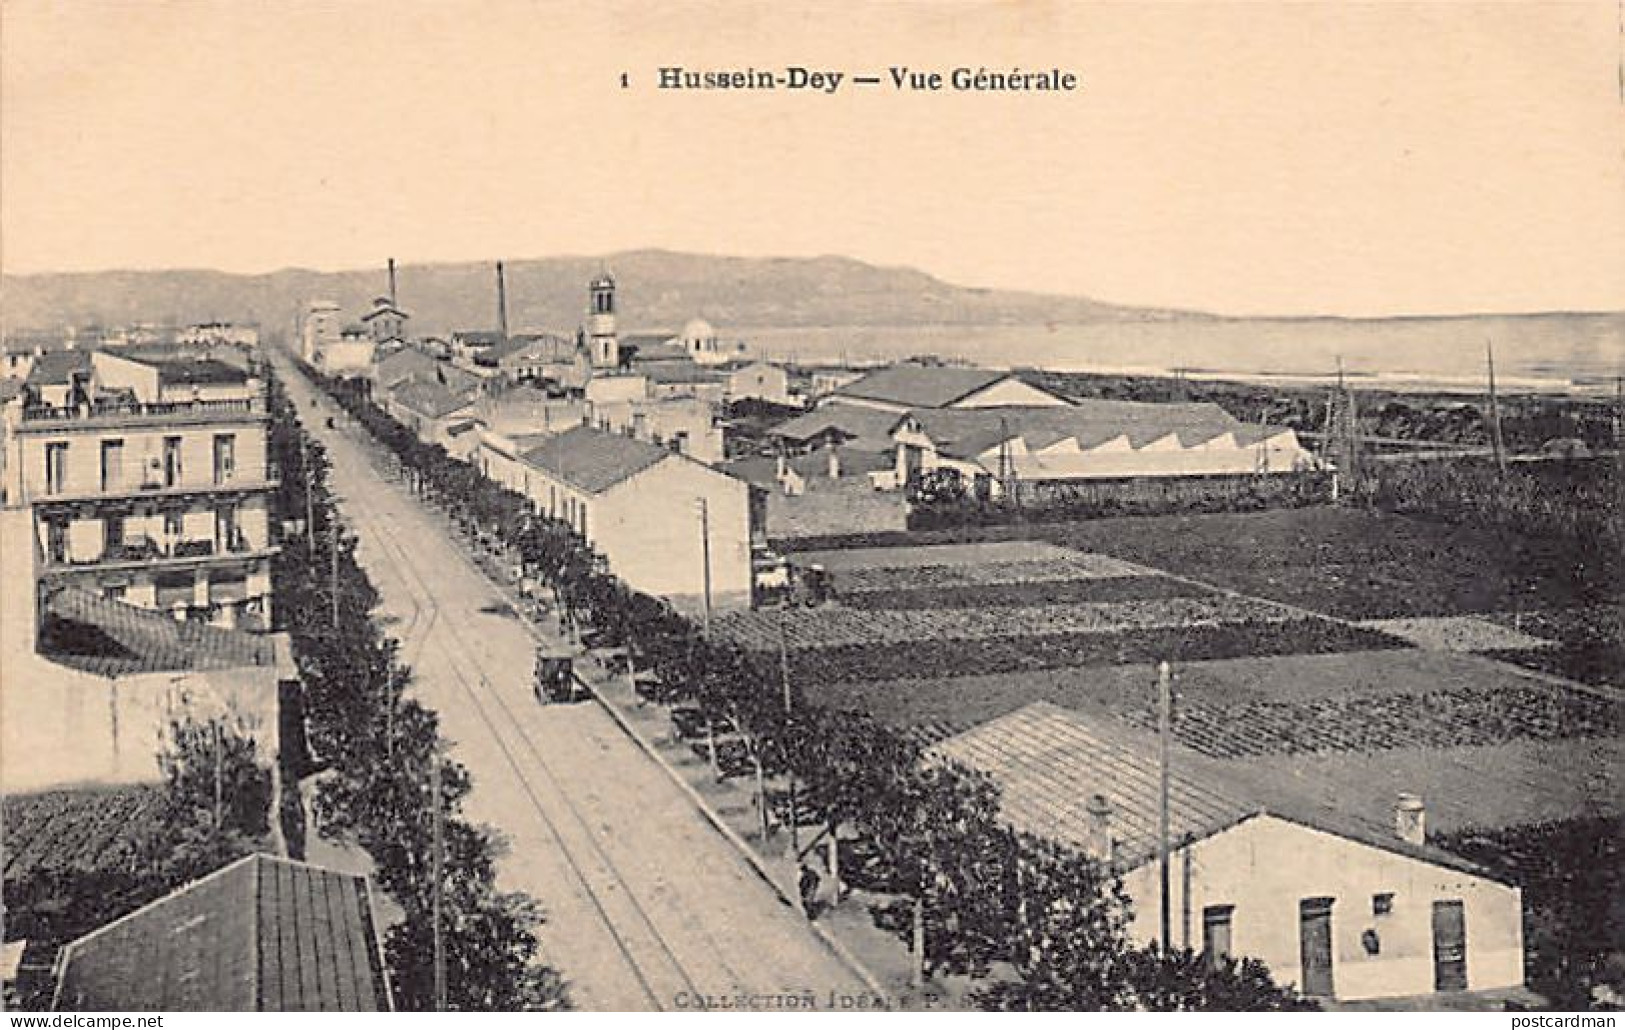 Algérie - HUSEIN DEY - Vue Générale - Ed. Collection Idéale P.S. 1 - Tunisie